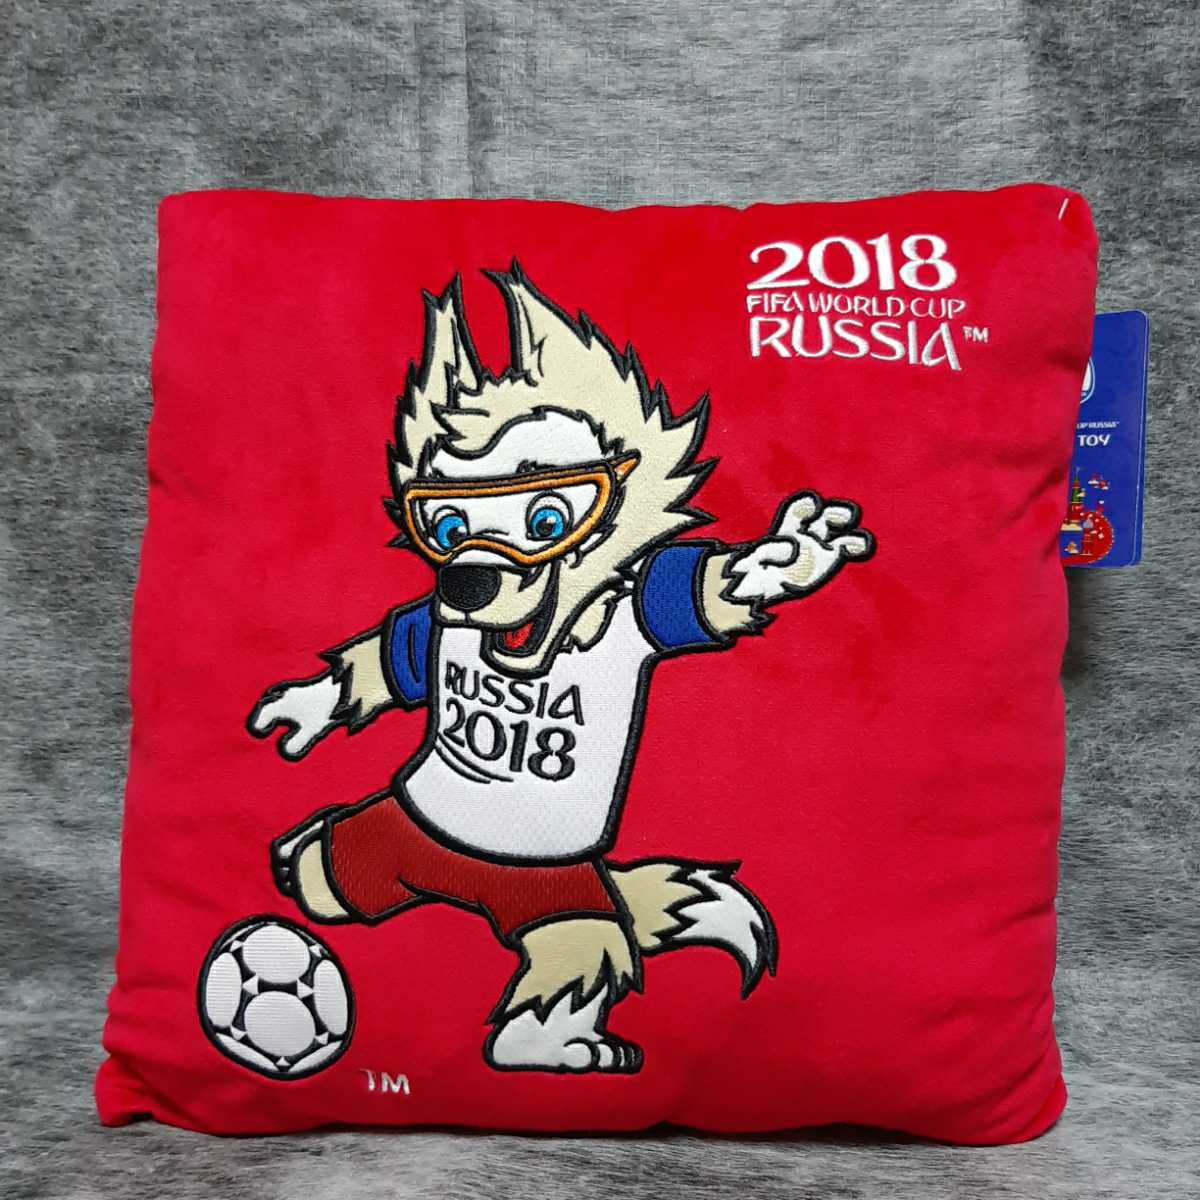 ザビワカ クッション赤 2018 FIFA WORLD CAP RUSSIA 未使用品の画像1